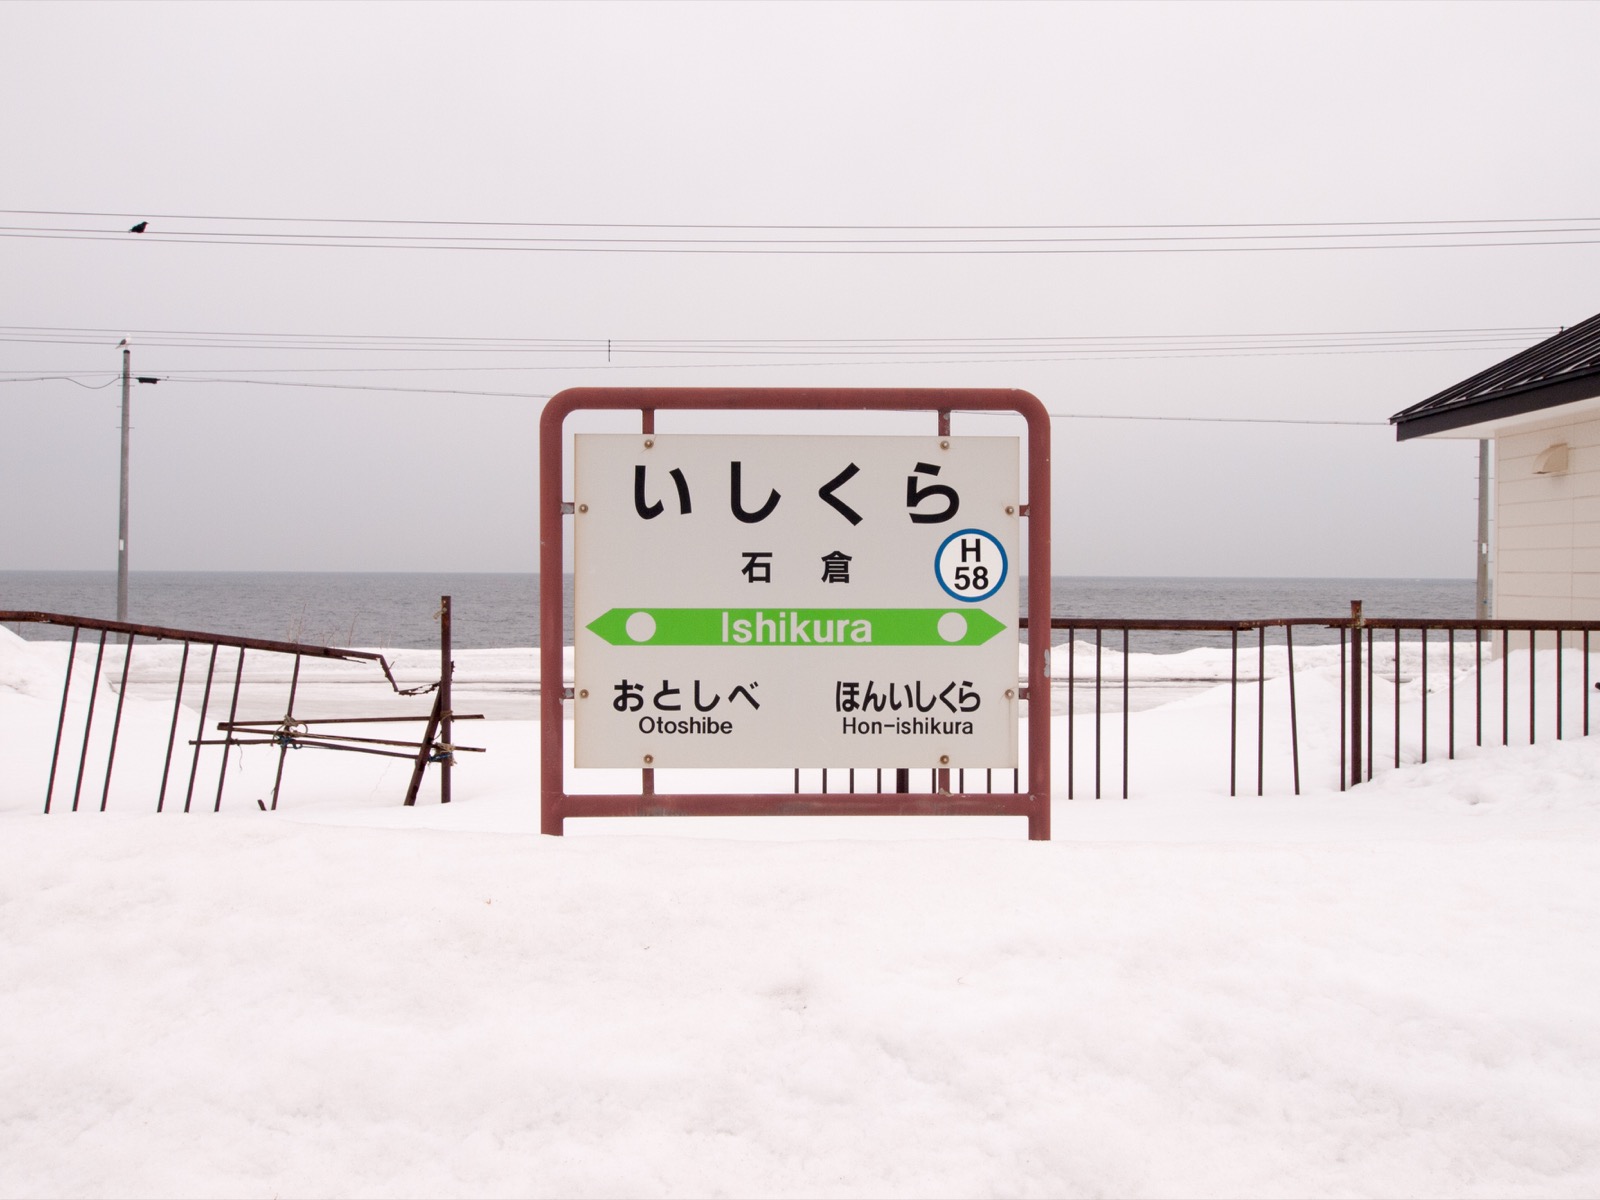 雪に埋もれた石倉駅の駅名標と、噴火湾（内浦湾）